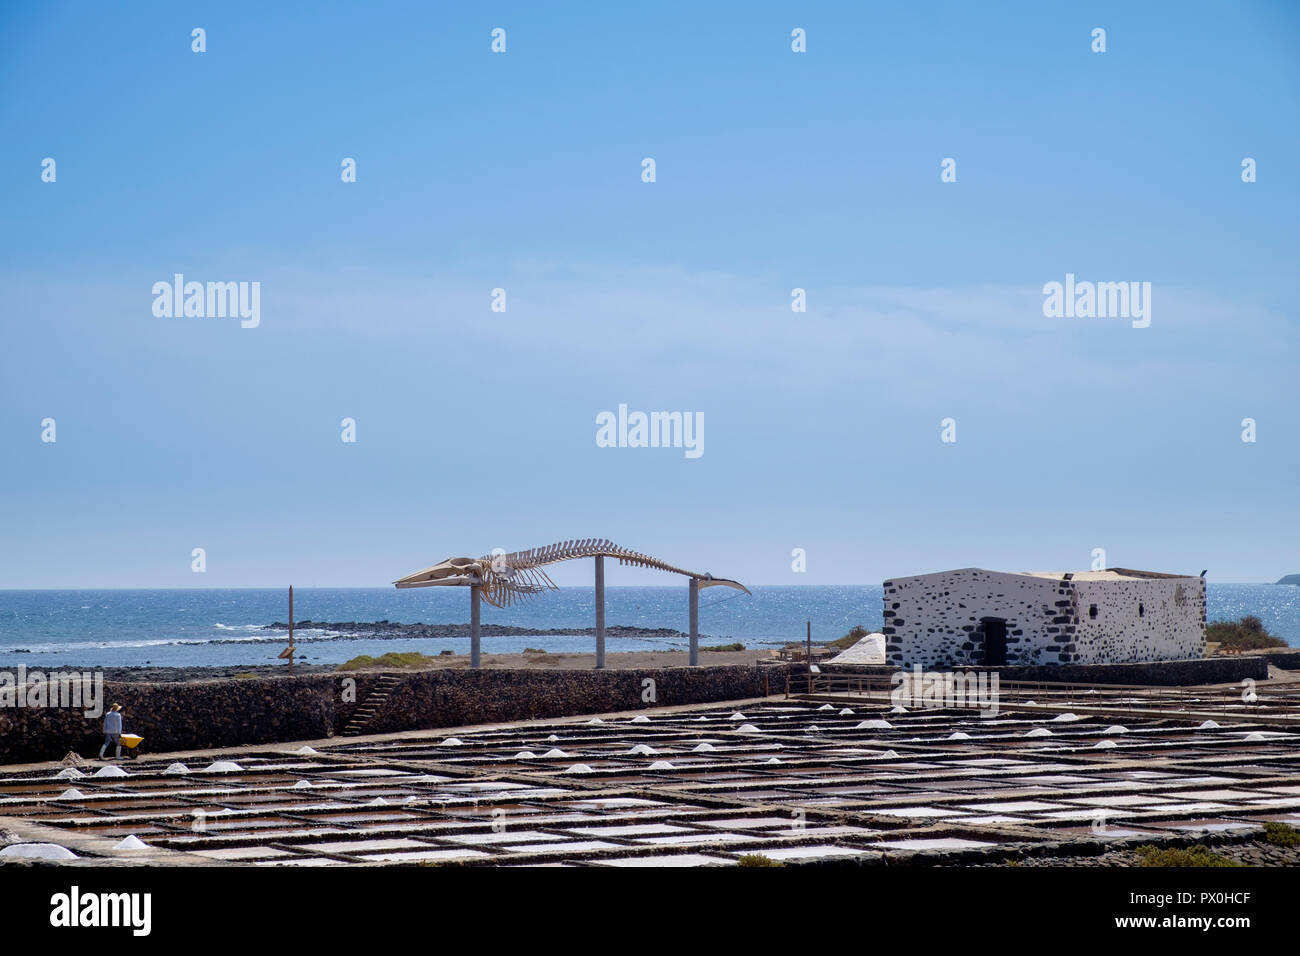 Salt flats at the Museo de las Salinas del Carmen, Fuerteventura. Stock Photo